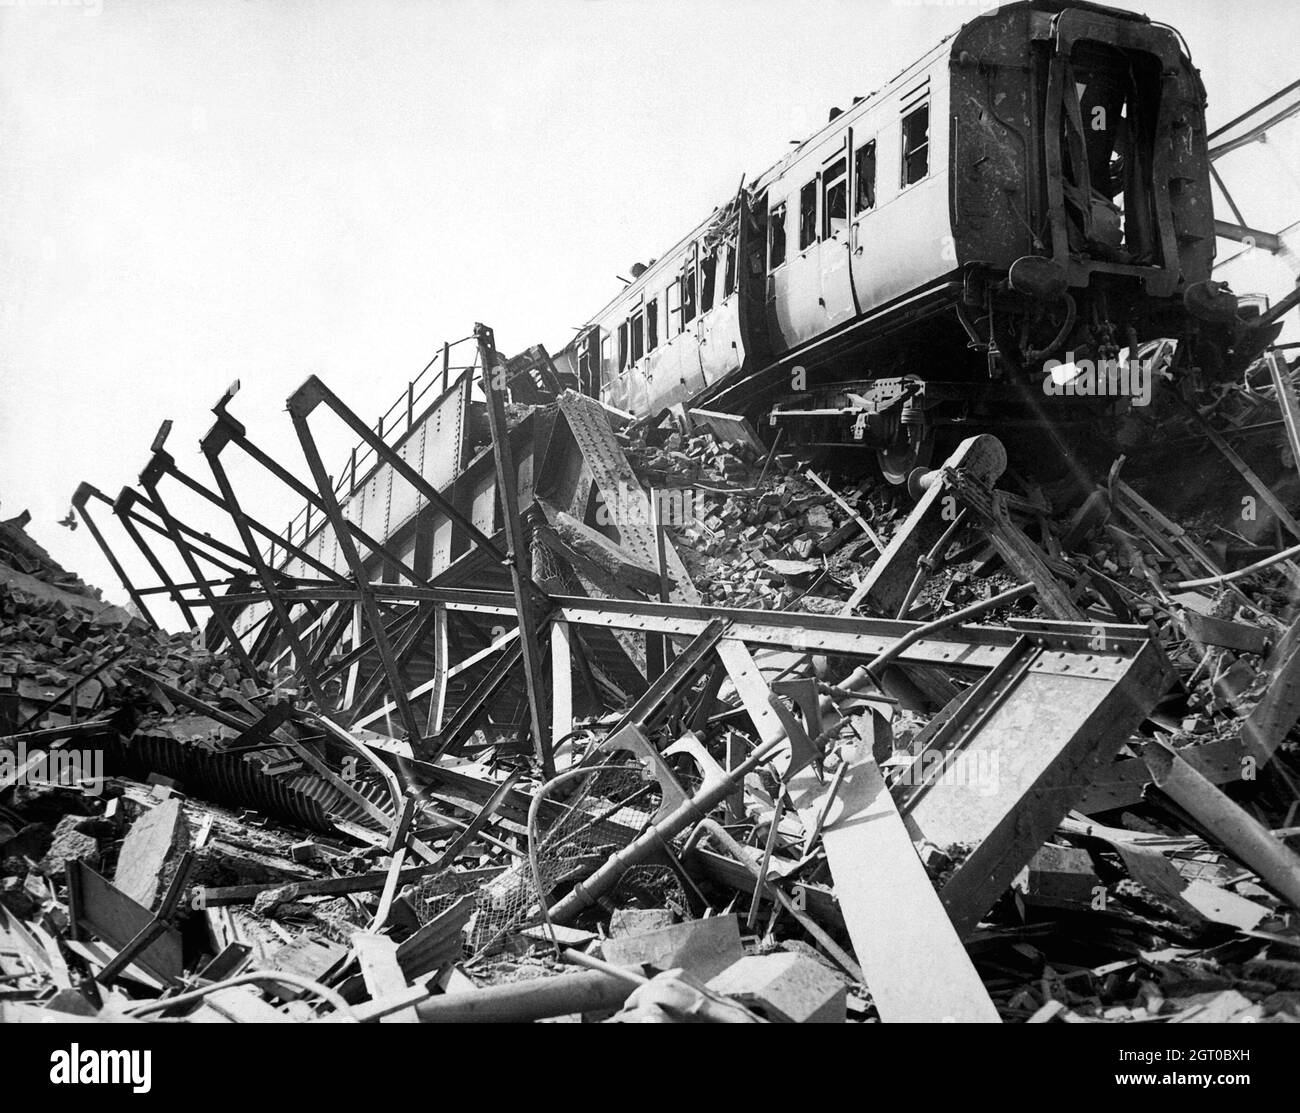 La gare de la nécropole de Londres a été détruite après un raid aérien pendant le Blitz en 1940 Banque D'Images